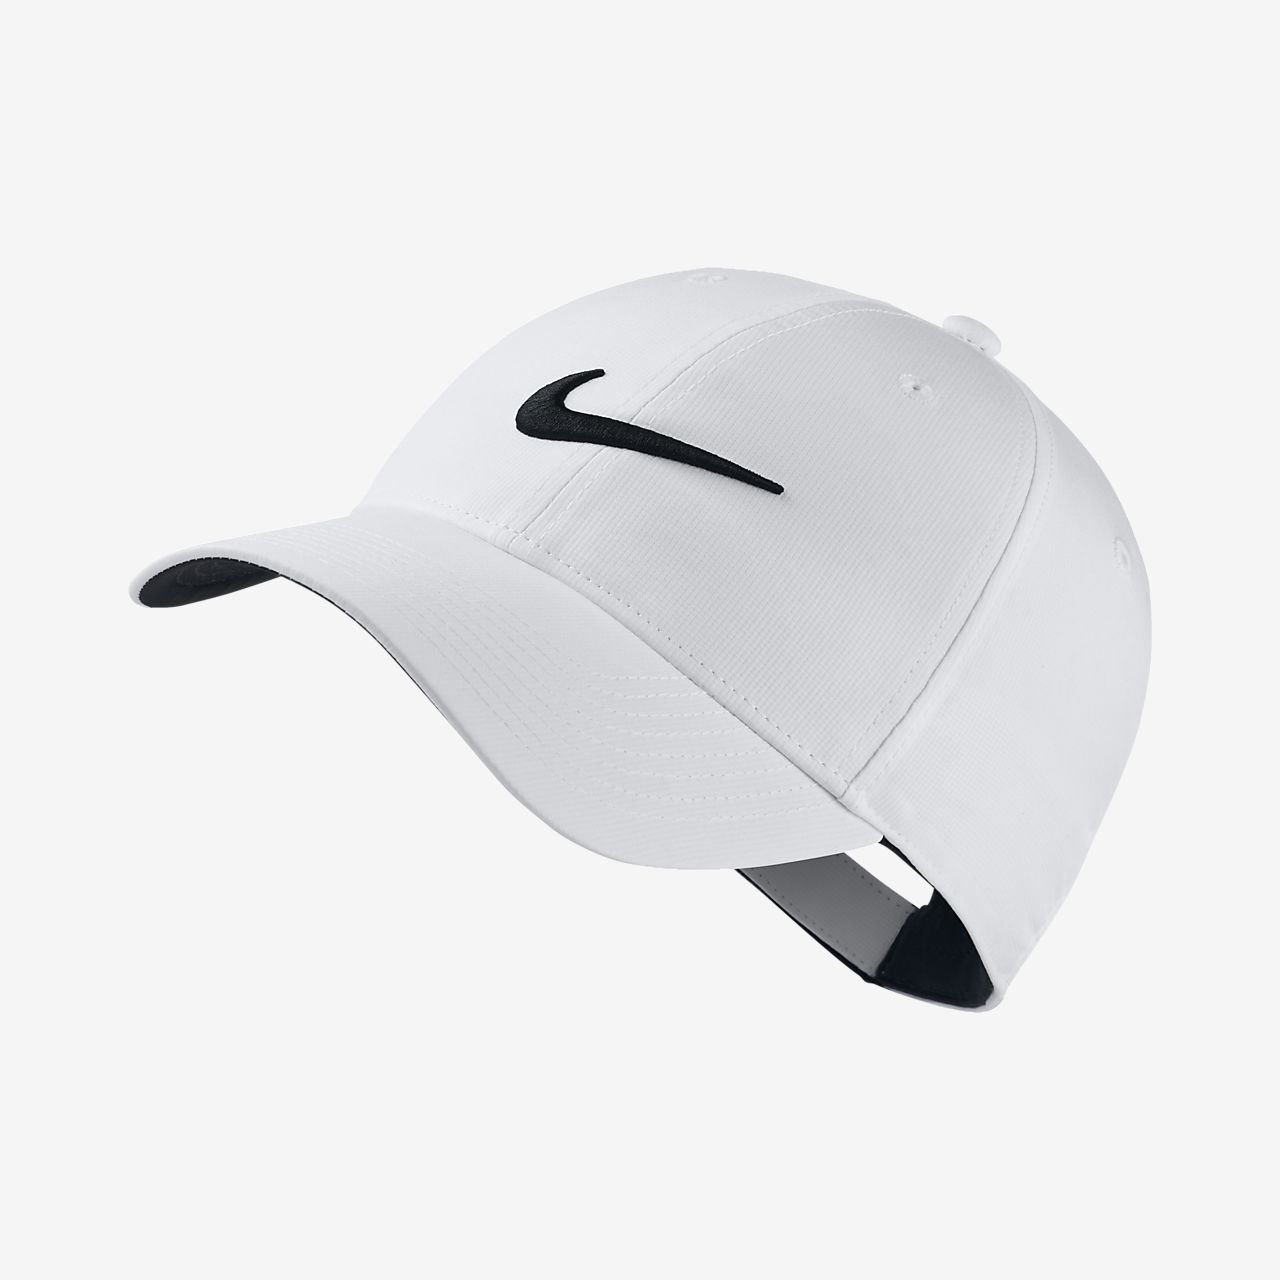 Buy > legacy 91 golf hat > in stock